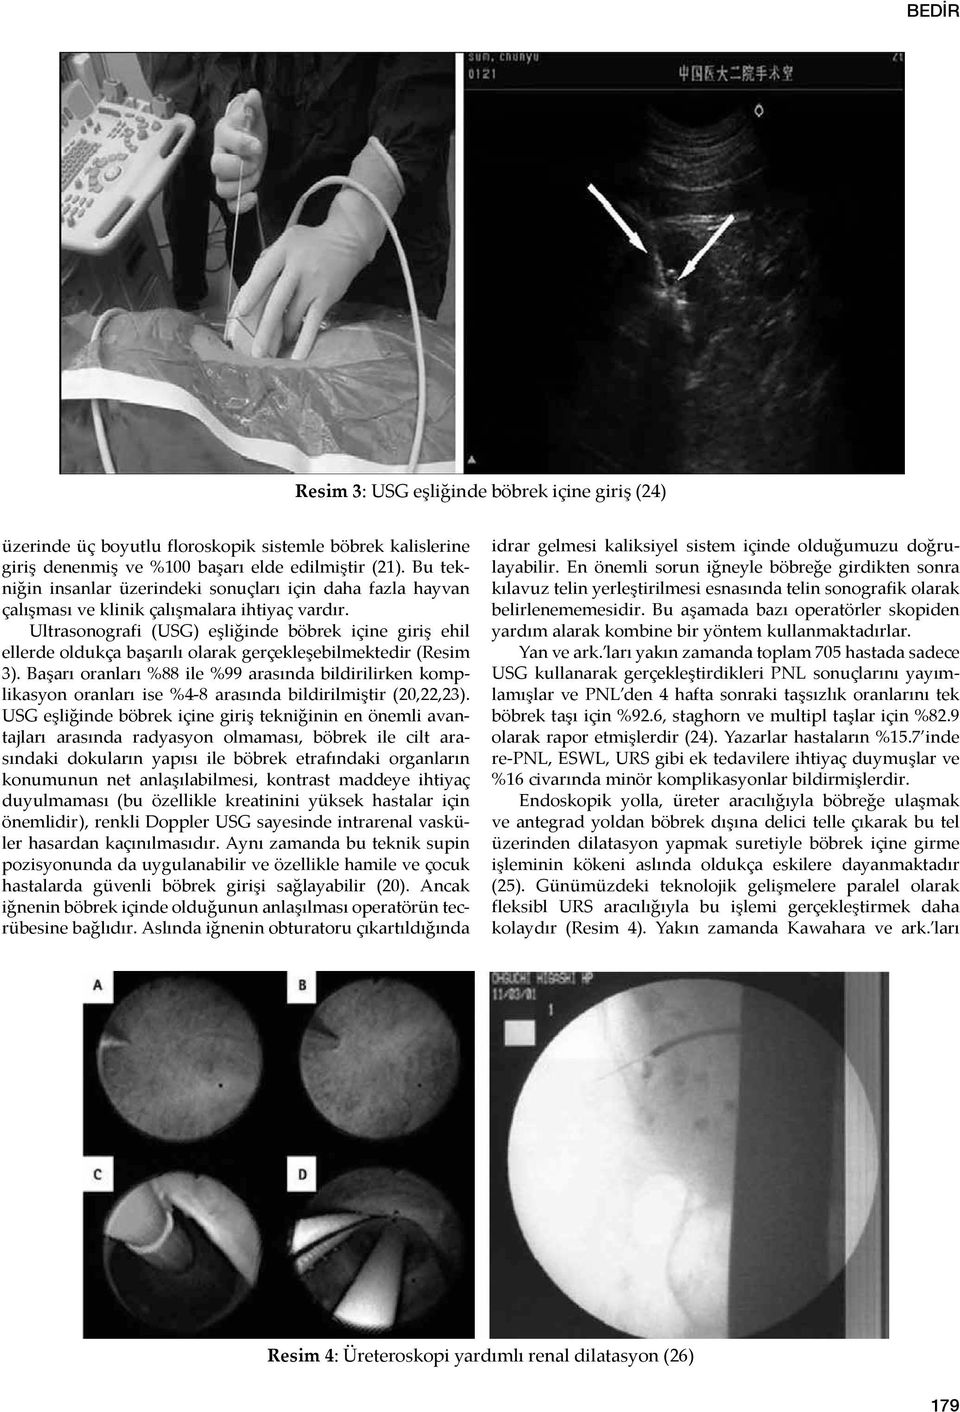 Ultrasonografi (USG) eşliğinde böbrek içine giriş ehil ellerde oldukça başarılı olarak gerçekleşebilmektedir (Resim 3).